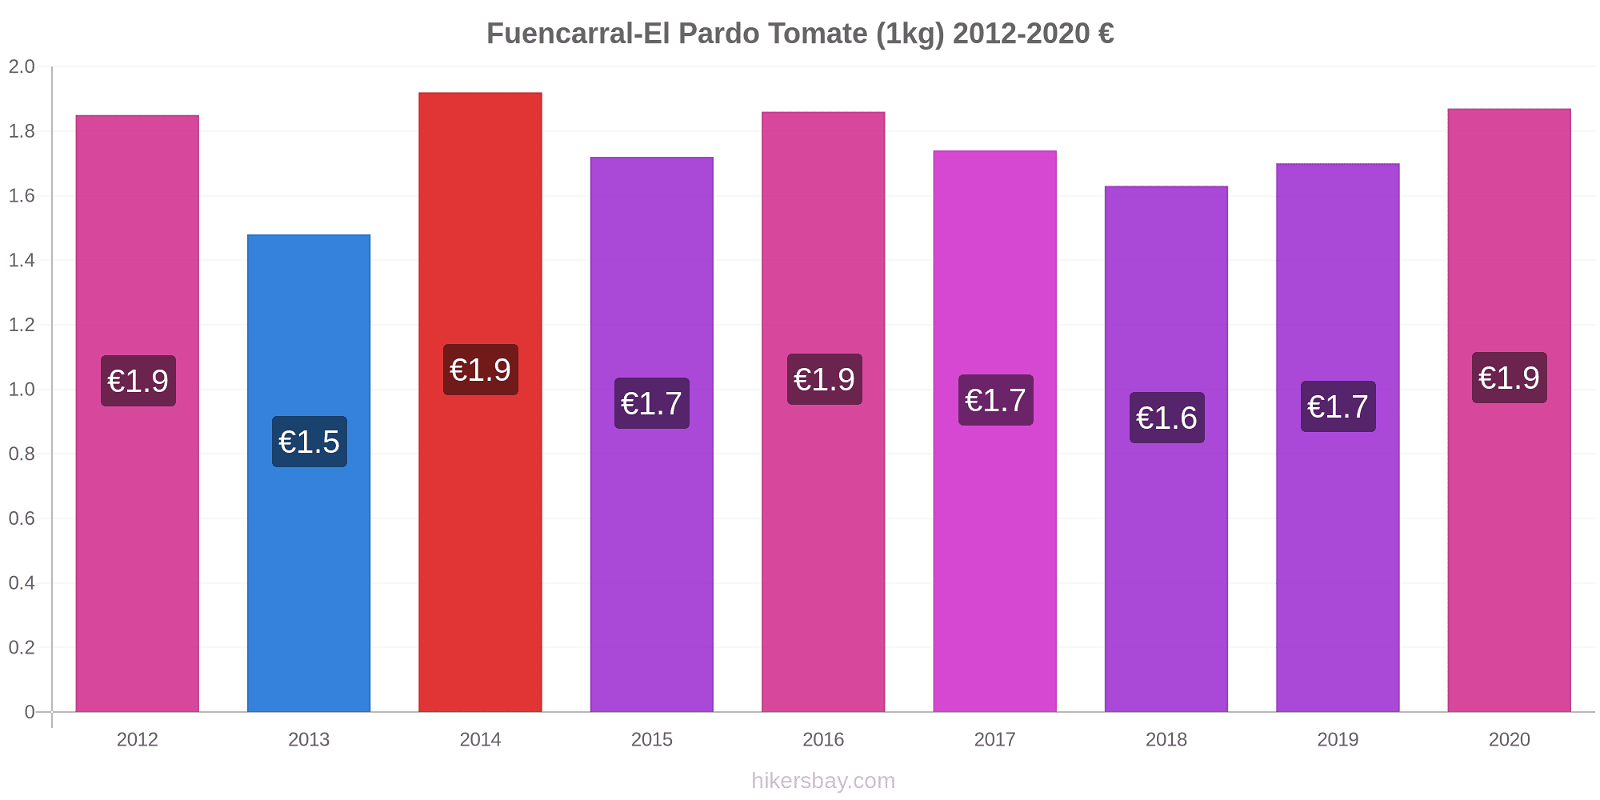 Fuencarral-El Pardo cambios de precios Tomate (1kg) hikersbay.com